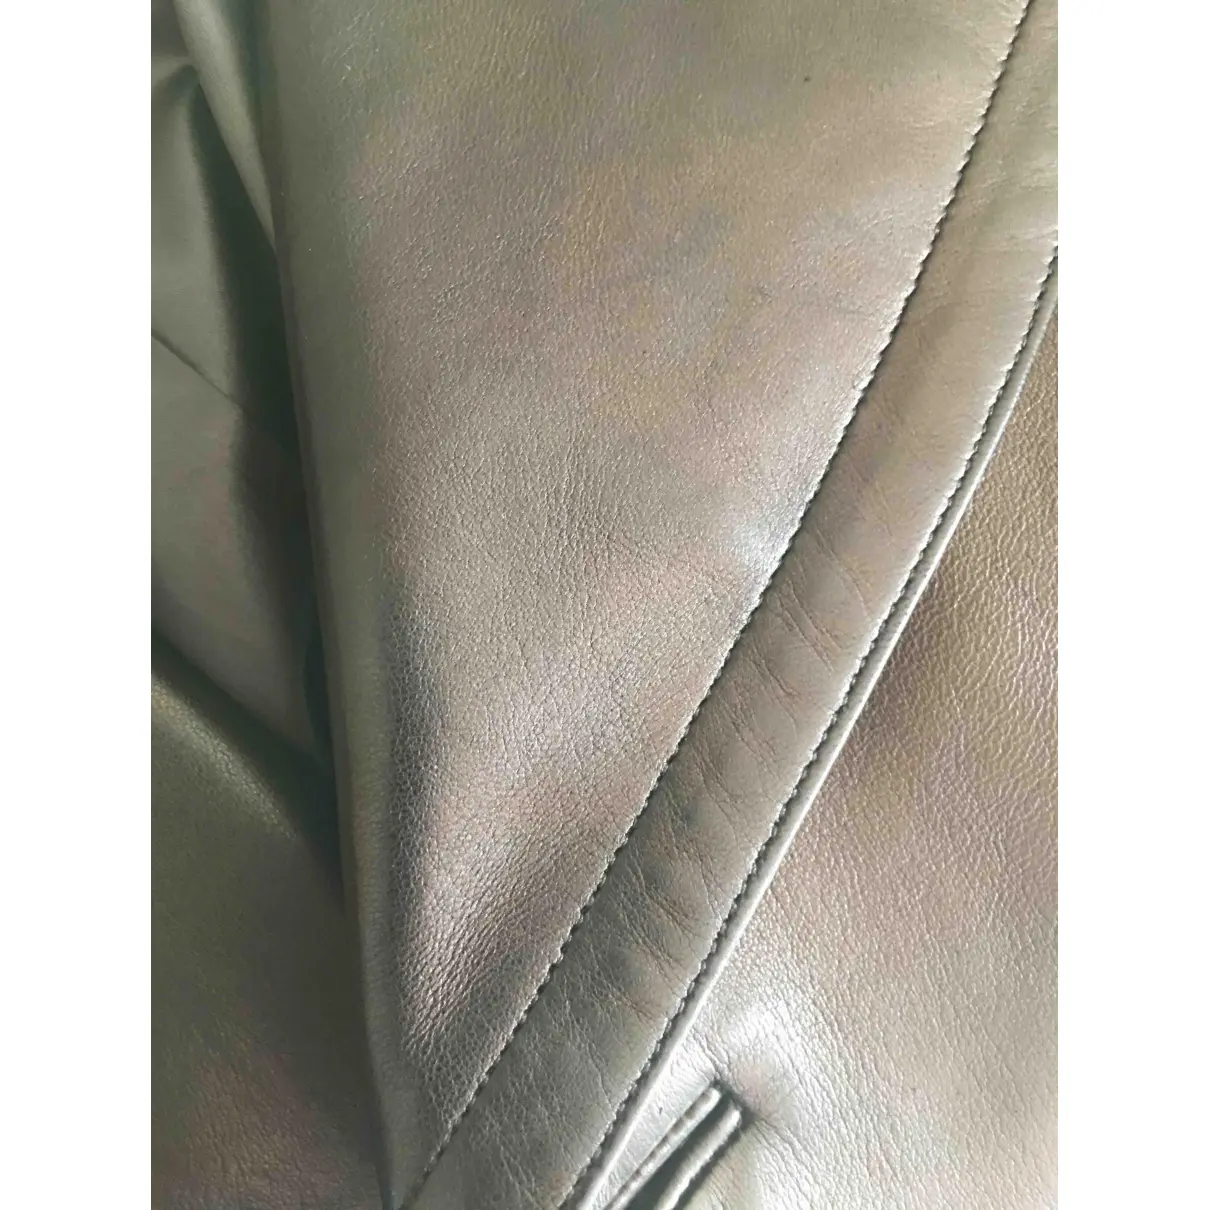 Leather jacket Alaïa